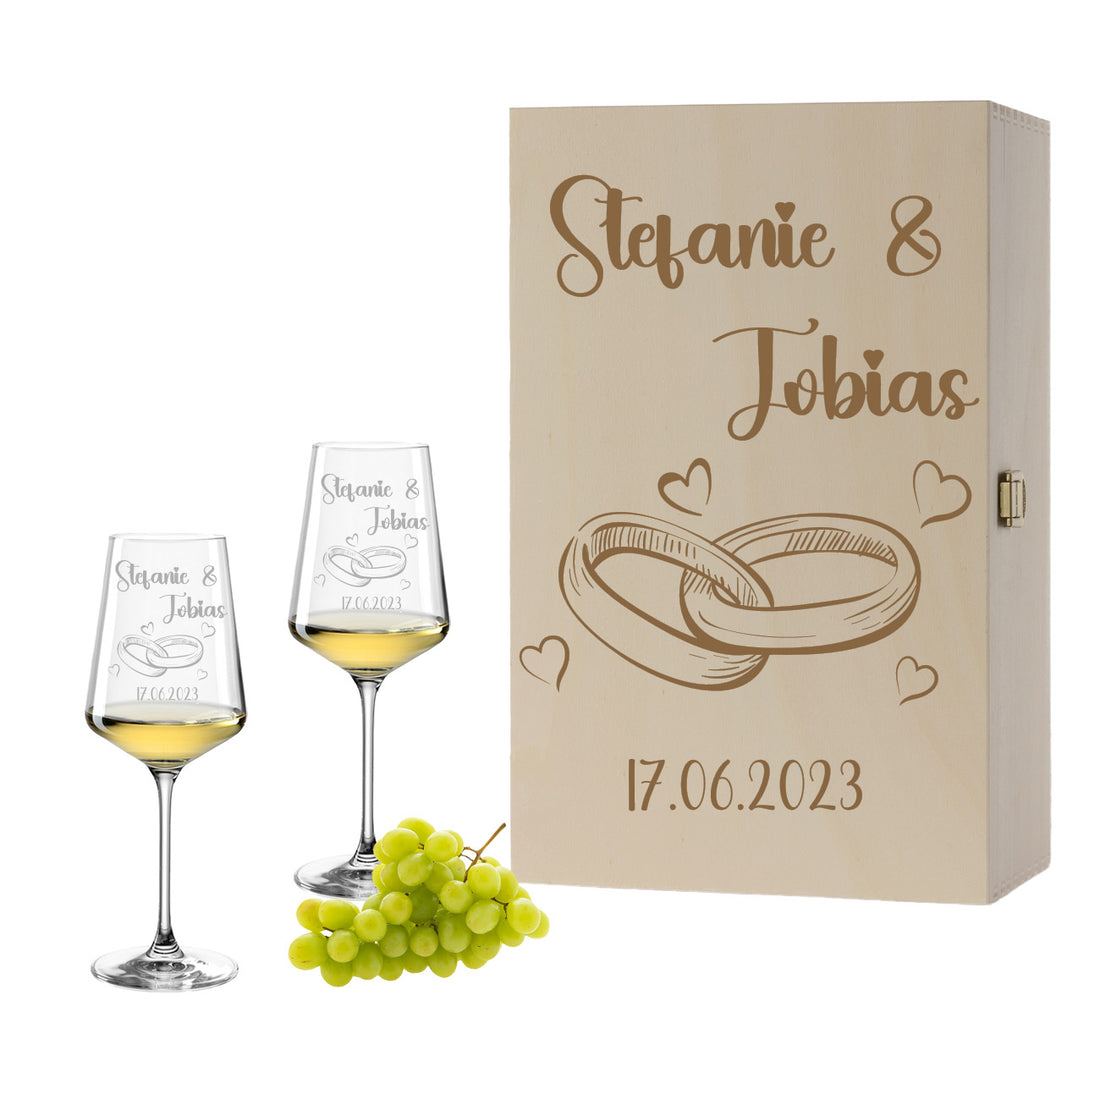 Weinglas mit Gravur Leonardo Puccini "HOCHZEITS RINGE" 2 Gläser und Holzbox groß mit Wunschname & Datum